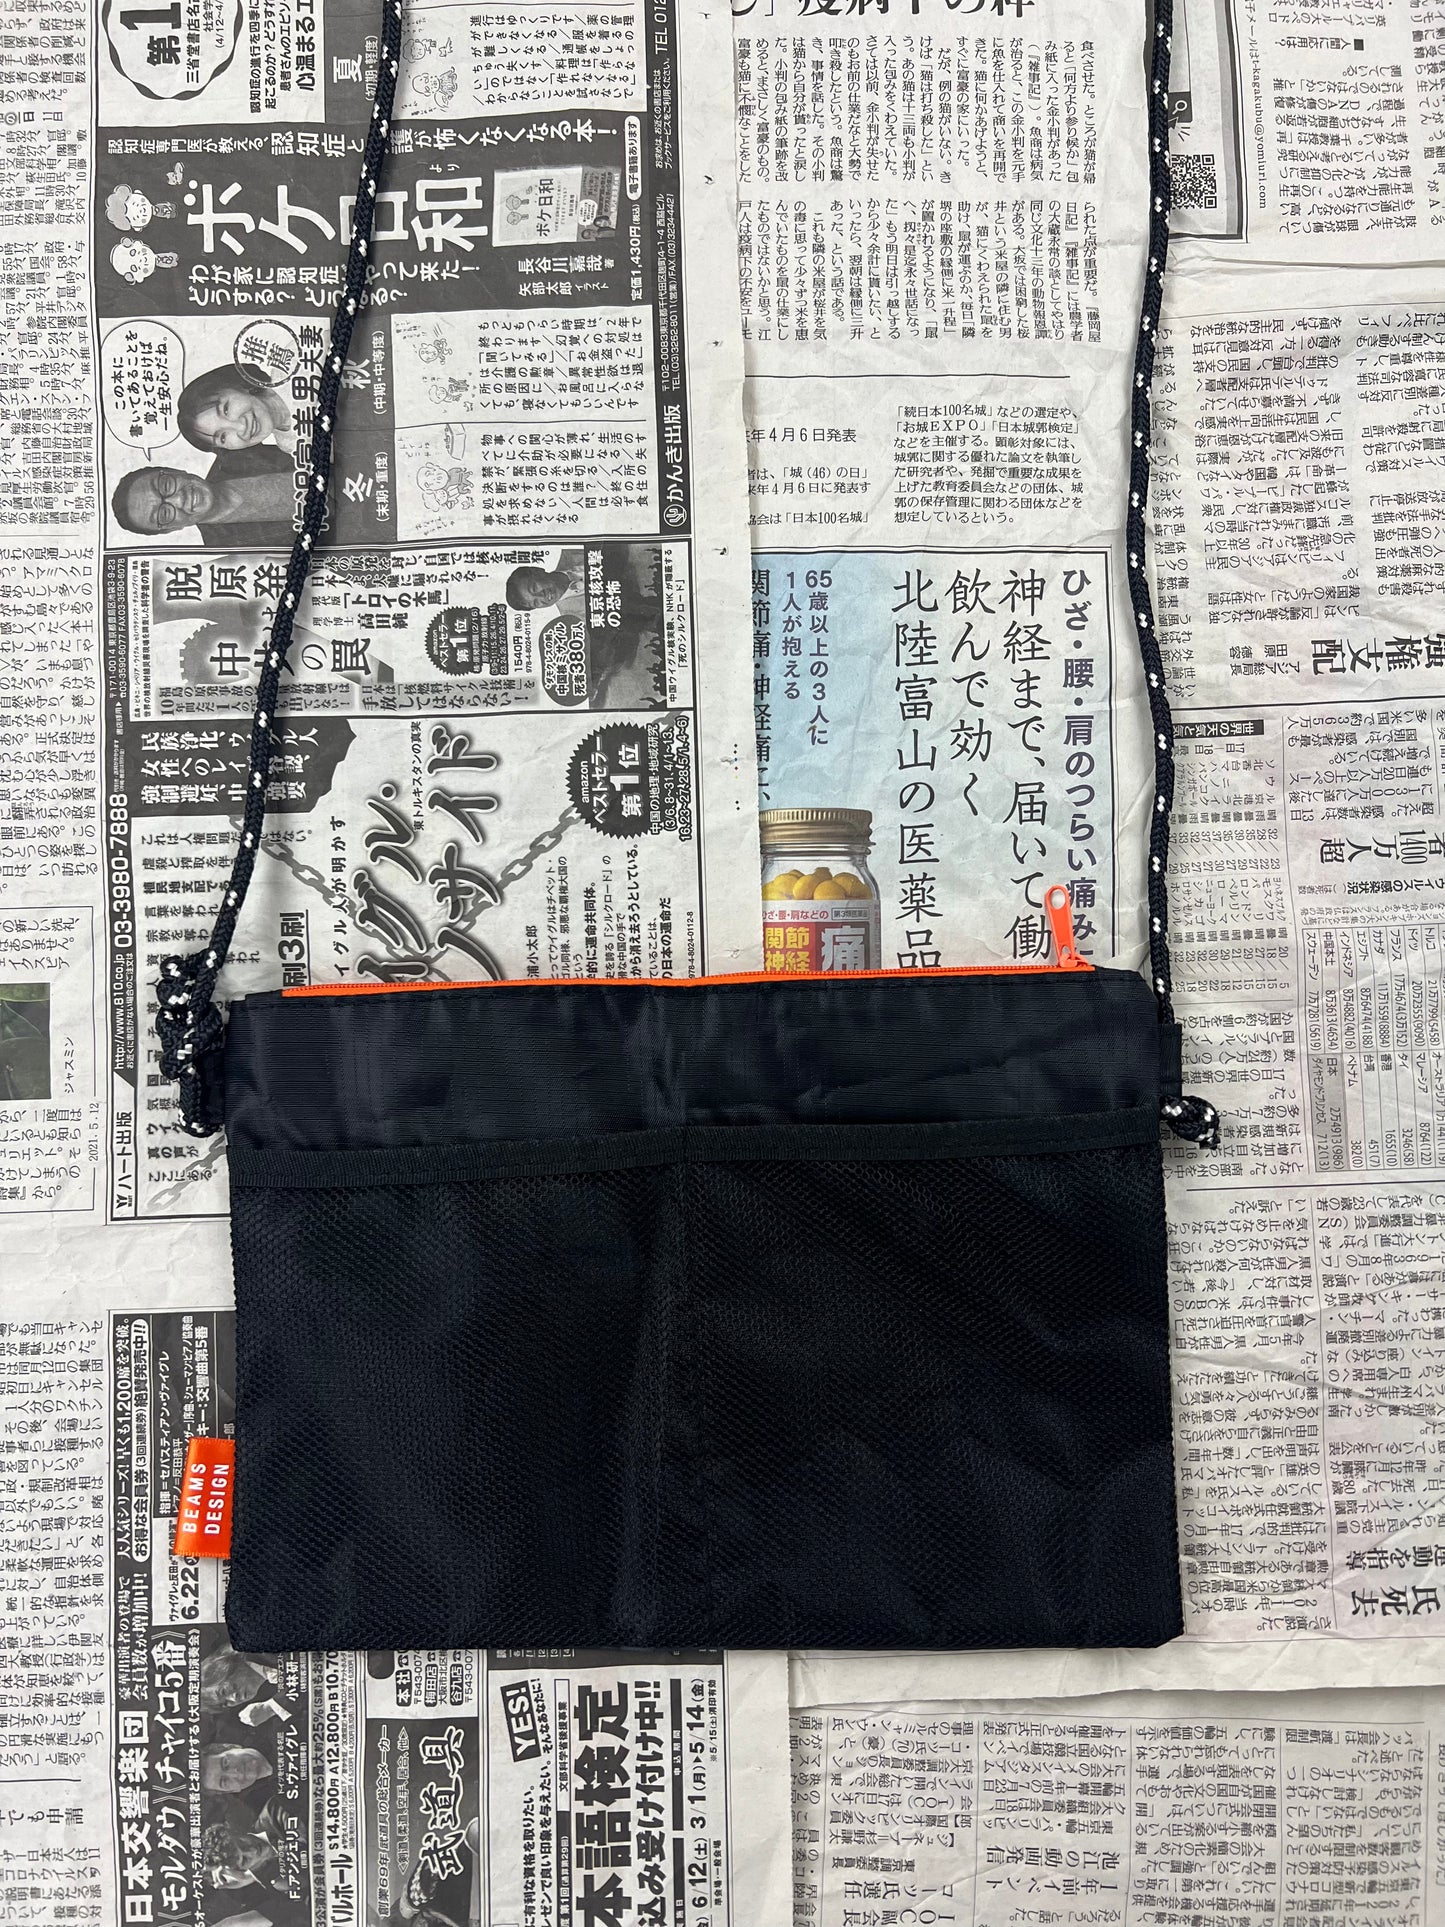 Beams Design x Sapporo Sacoche Bag